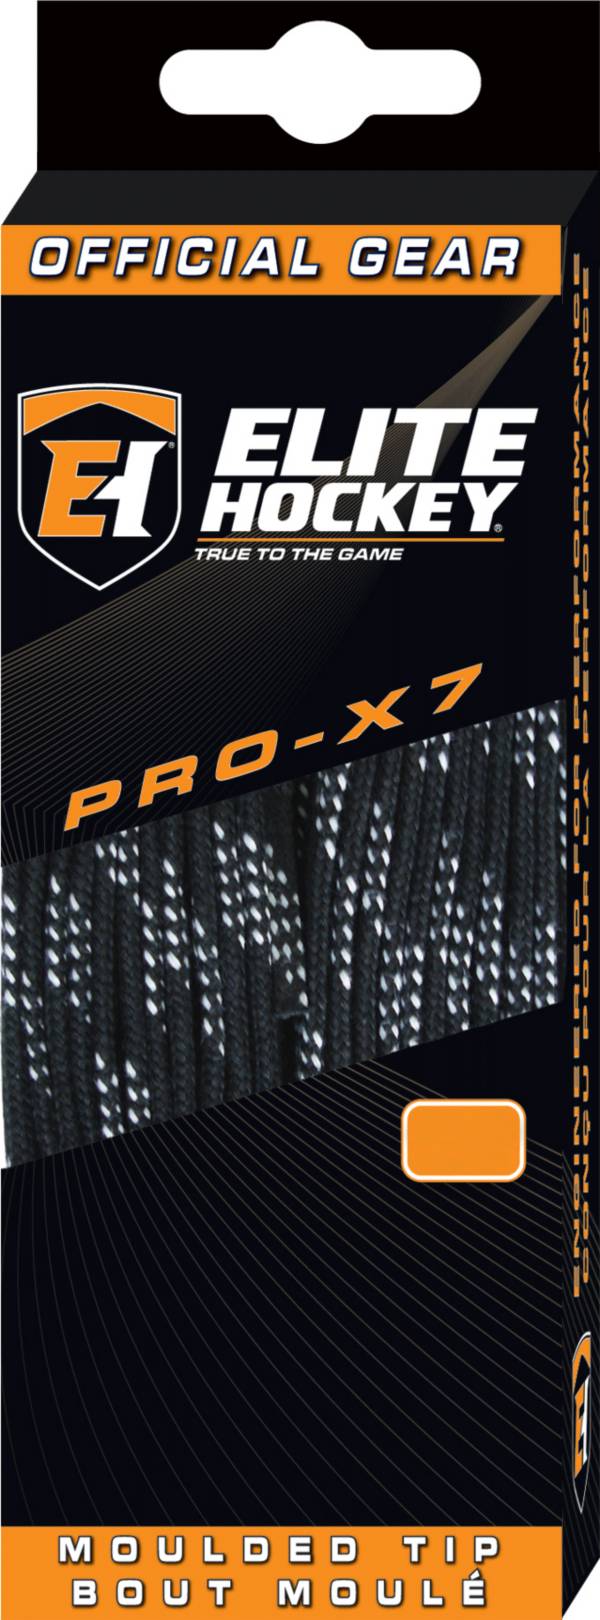 Elite Hockey Pro-X7 Unwaxed Skate Laces product image